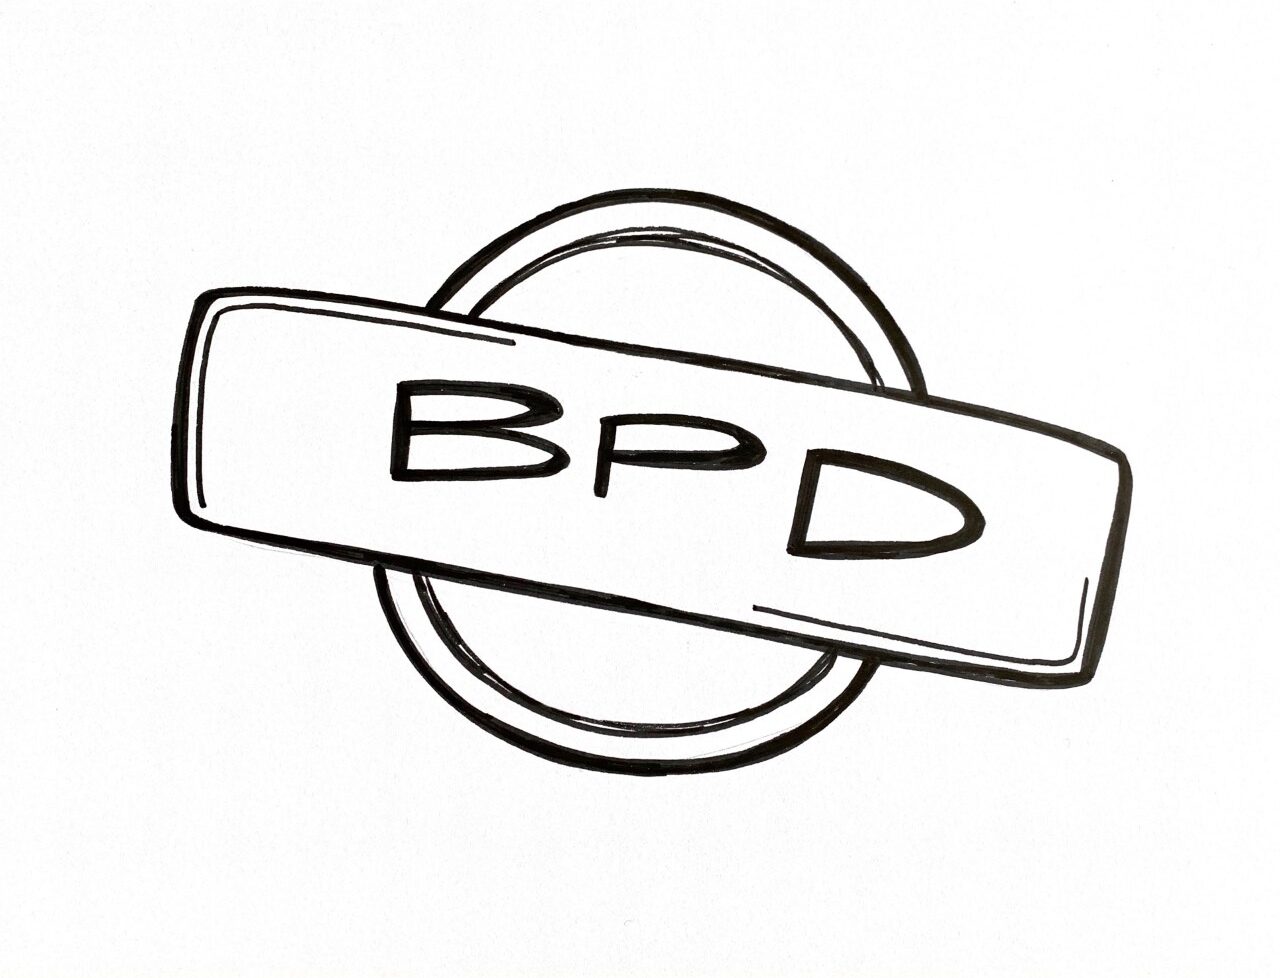 Skizze von einem Stempel mit BDP in der Mitte, welches als Abkürzung für Best Practice Dokument steht